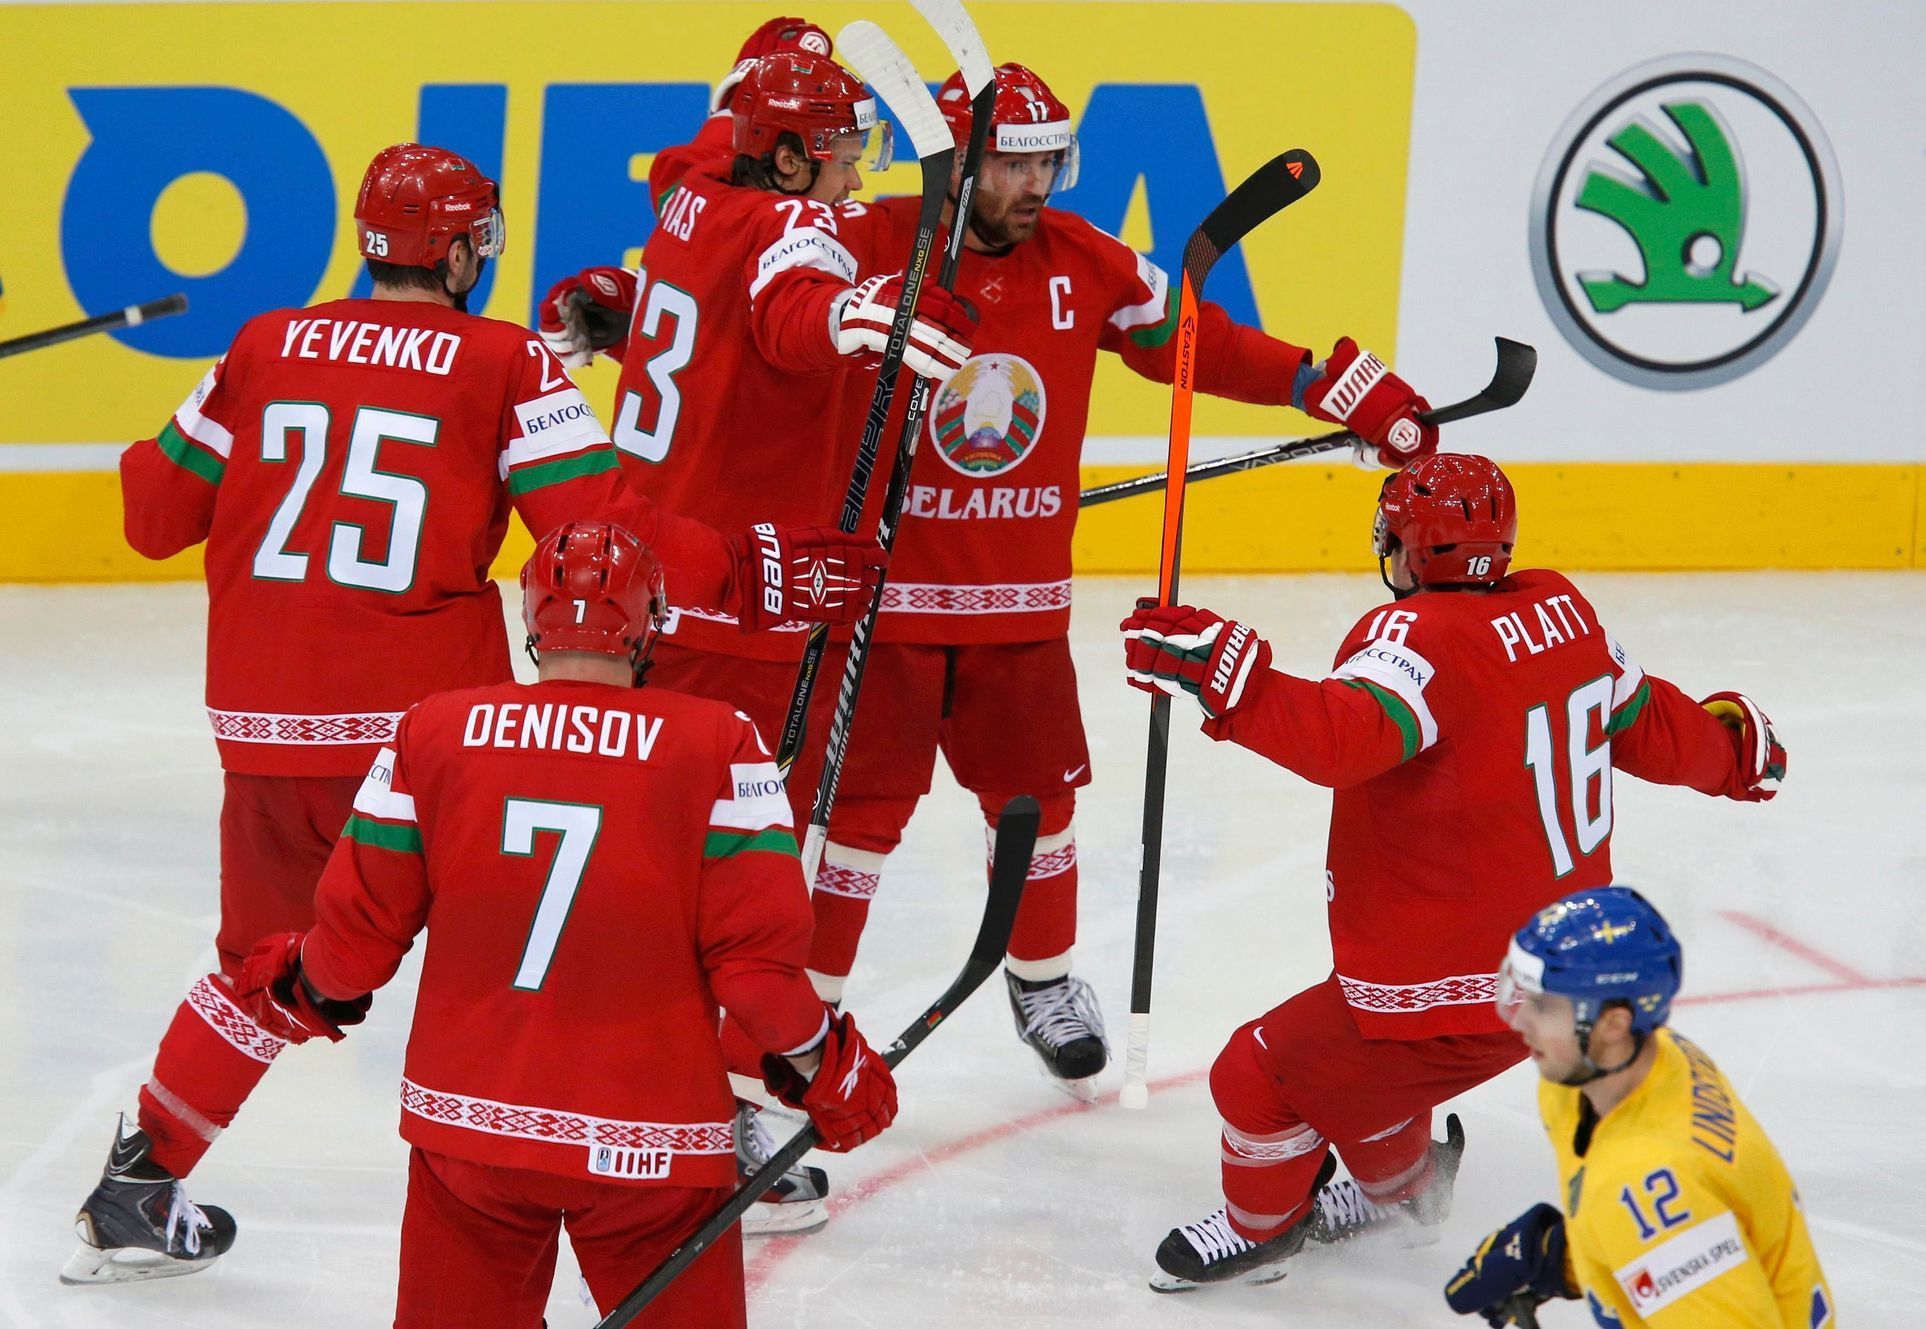 Platt of Belarus celebrates scoring against Sweden in men's ice hockey World Championship quarter-final game in Minsk